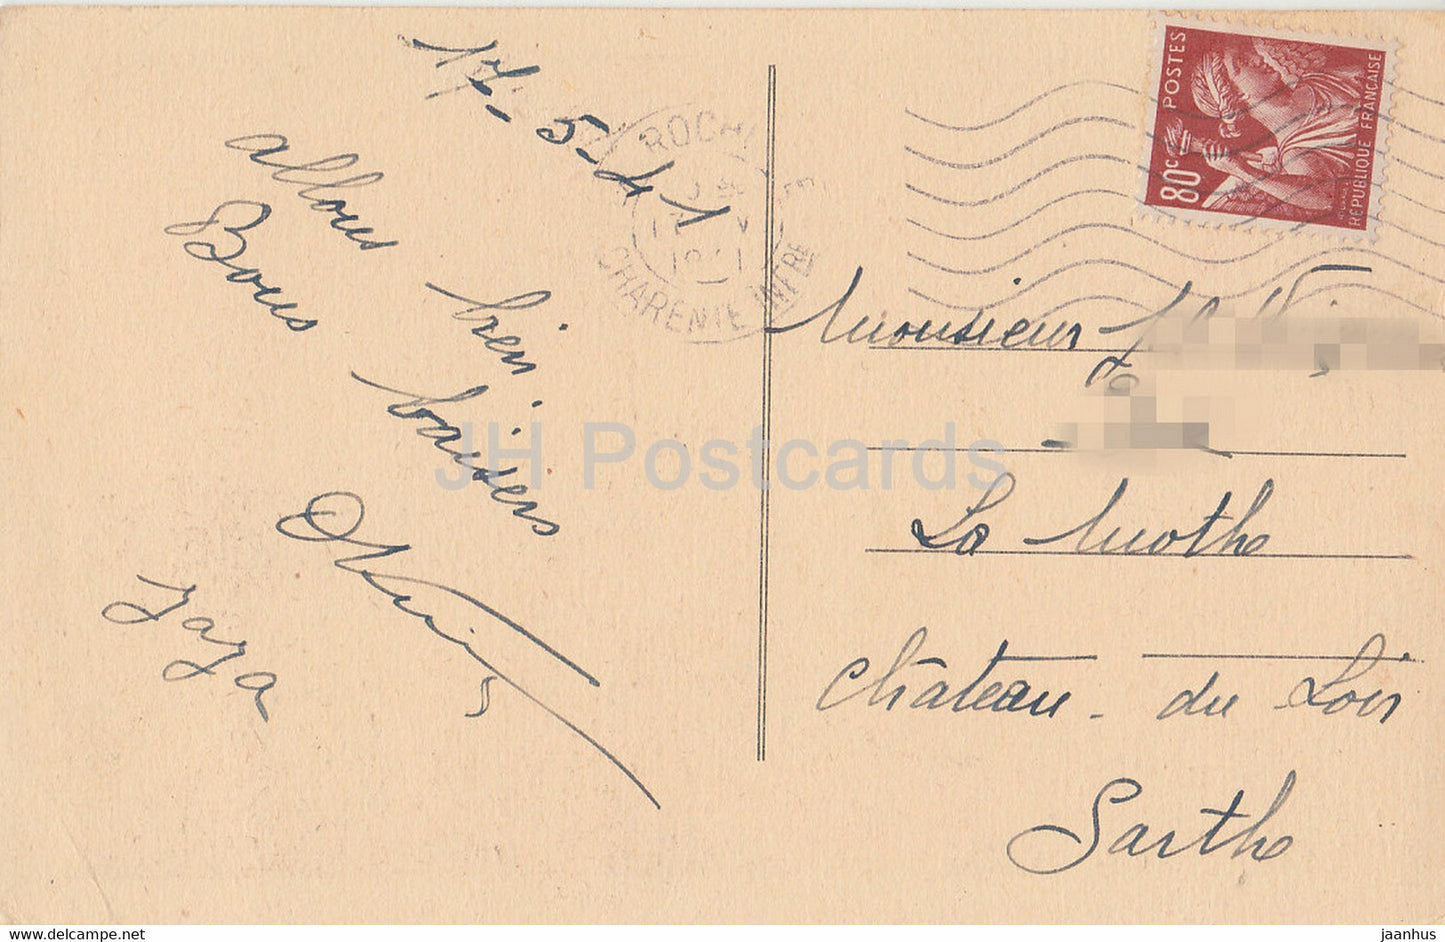 La Rochelle - L'Entree du Port - boat - ship - old postcard - 1941 - France - used